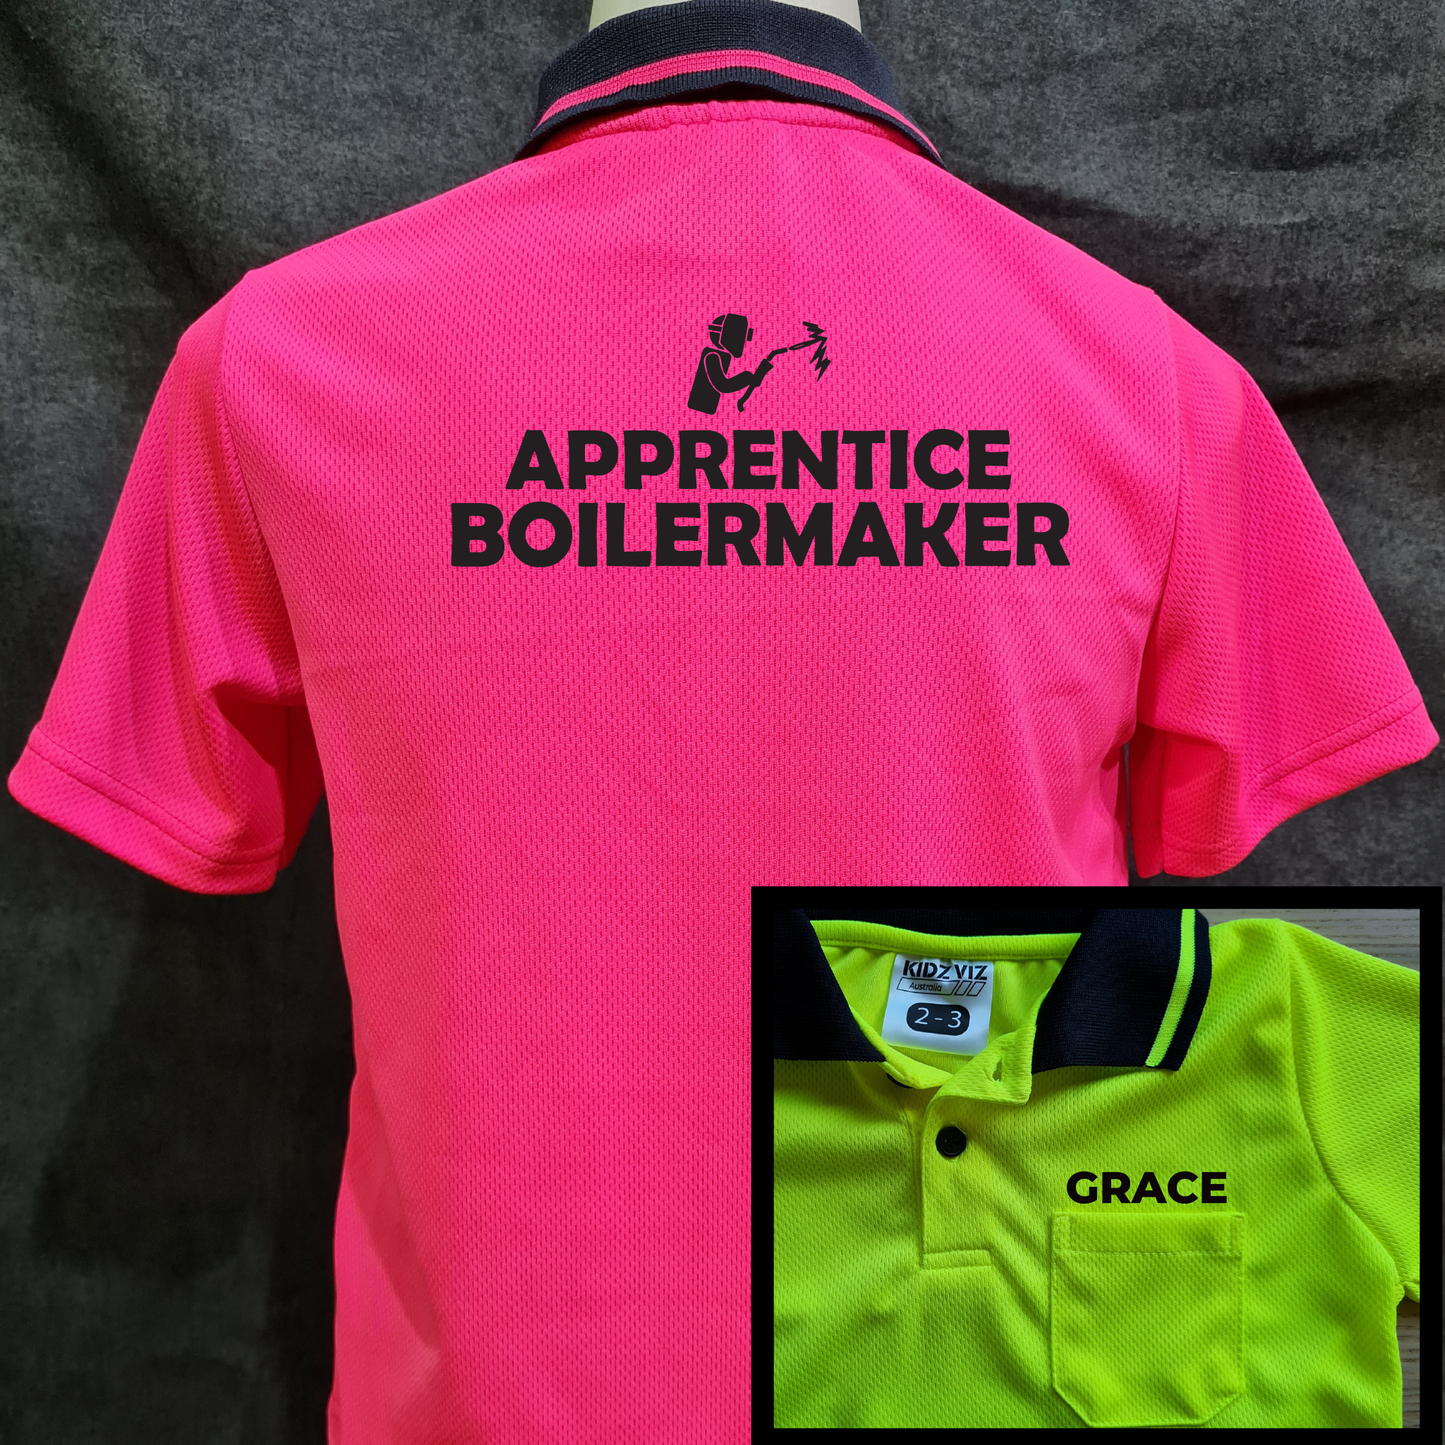 Apprentice Boilermaker